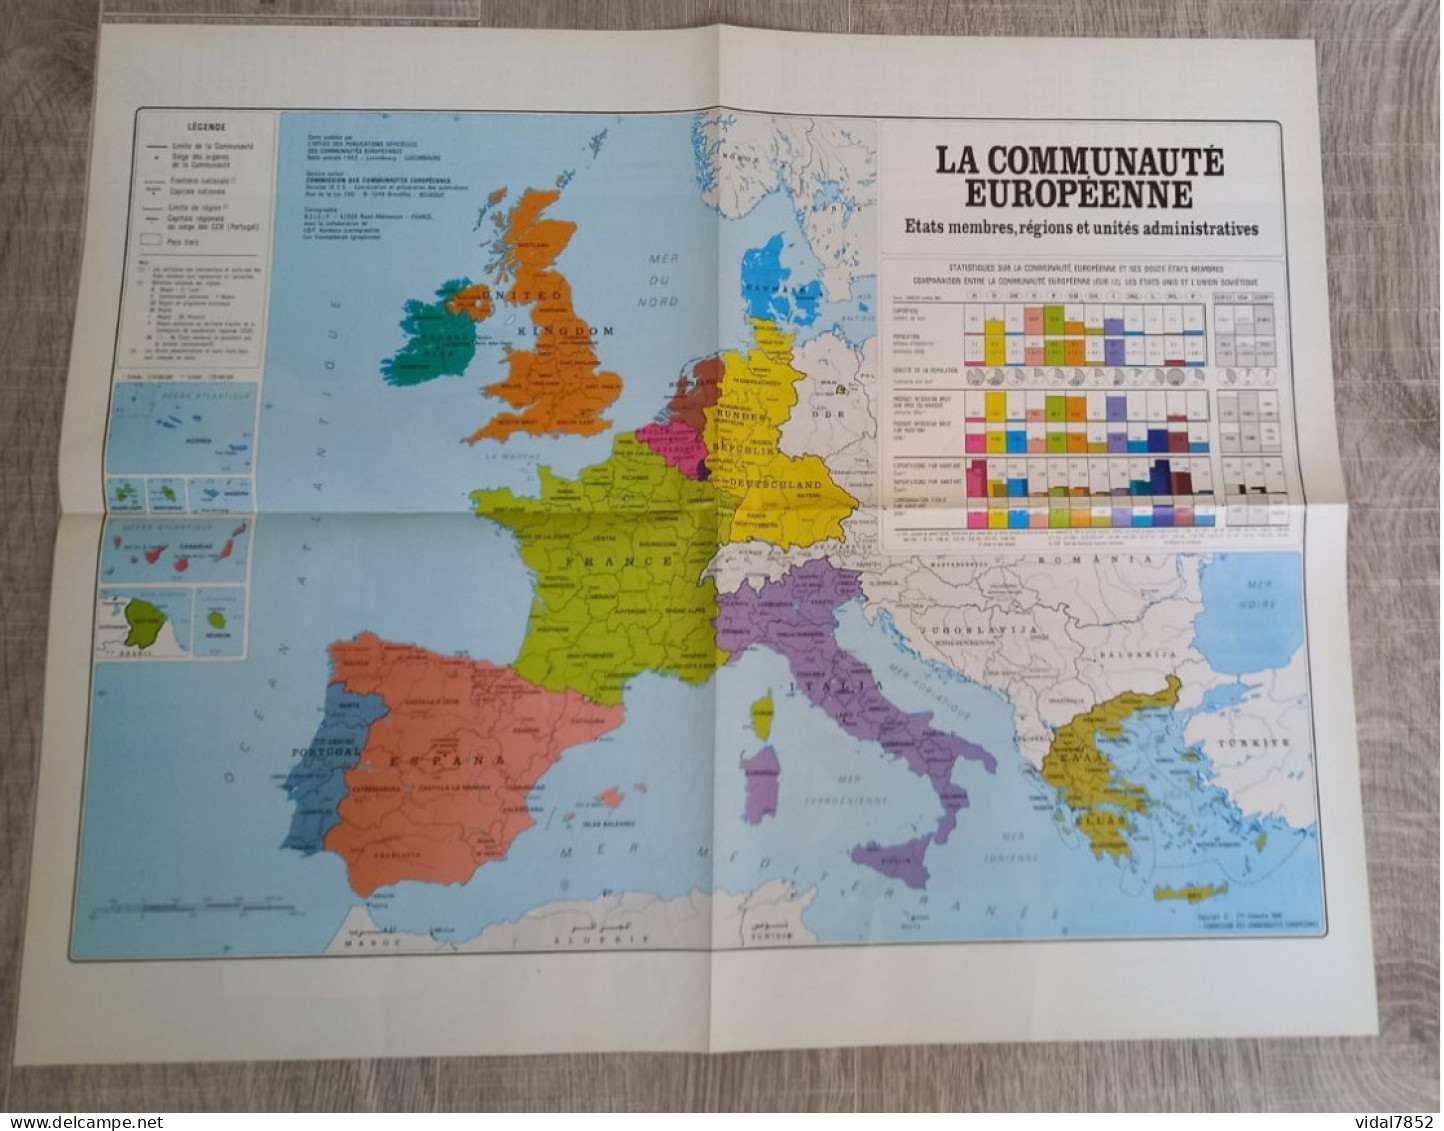 Calendrier-Almanach Des P.T.T 1991-Poster Intérieur Communauté Européenne--Tom Jerry Département AIN-01-Référence 325 - Grand Format : 1991-00